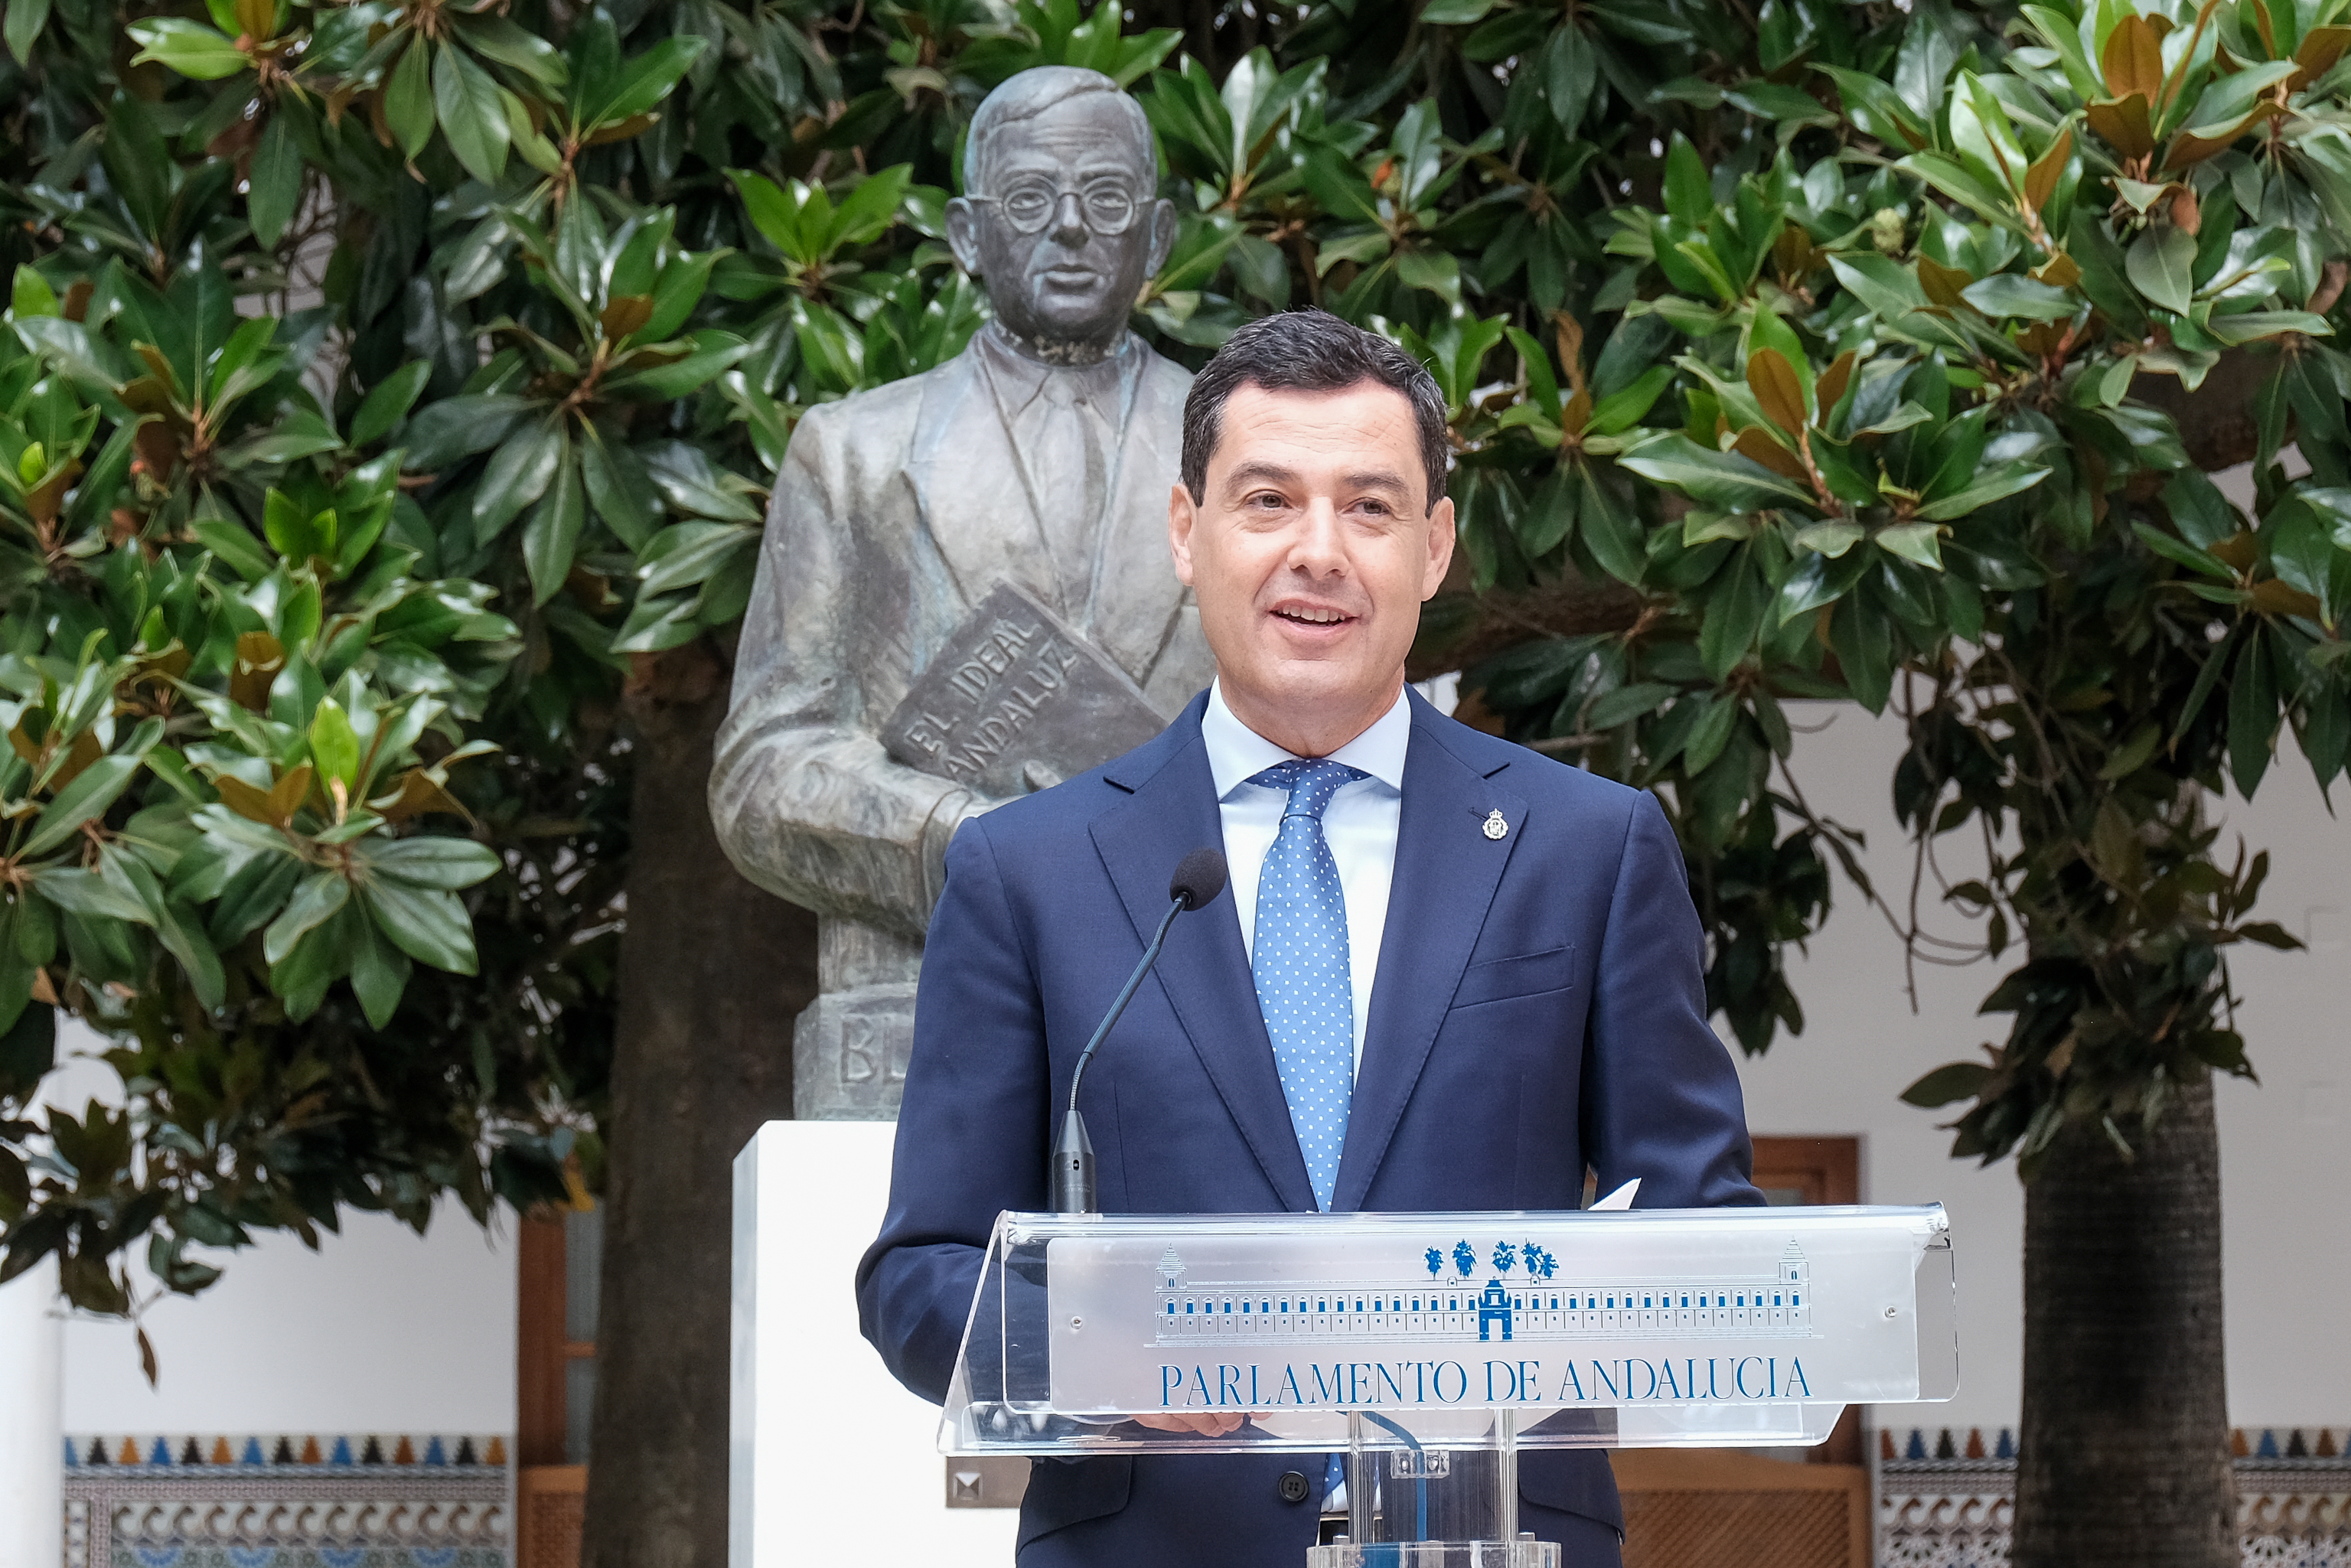   El presidente de la Junta de Andaluca en funciones, Juan Manuel Moreno, durante su intervencin en el acto en homenaje a Blas Infante